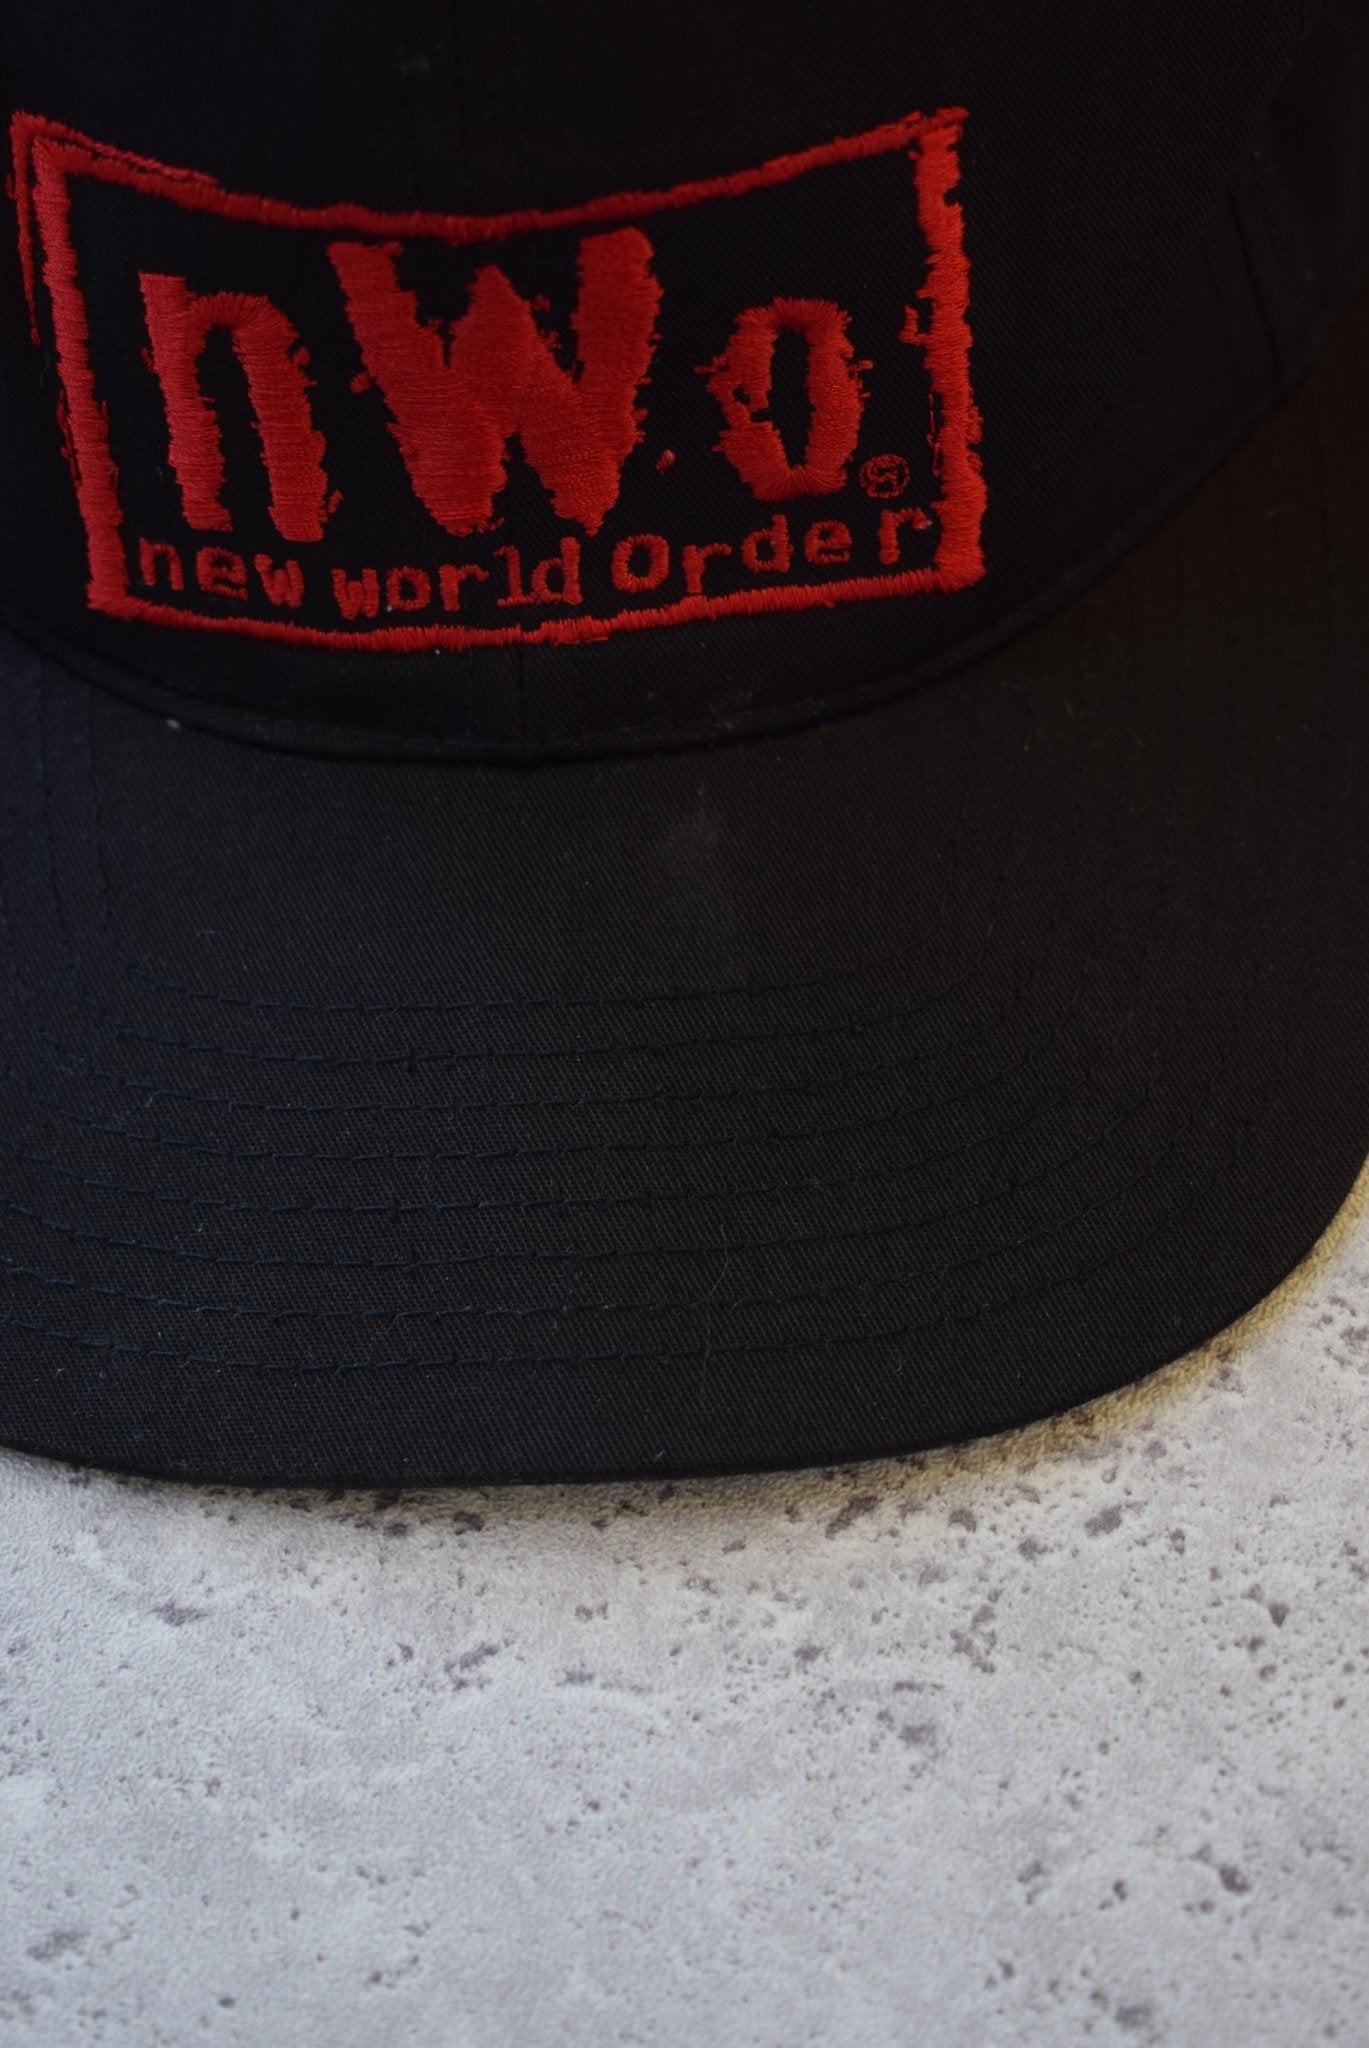 Vintage 1998 New World Order Wrestling Hat - Retrospective Store